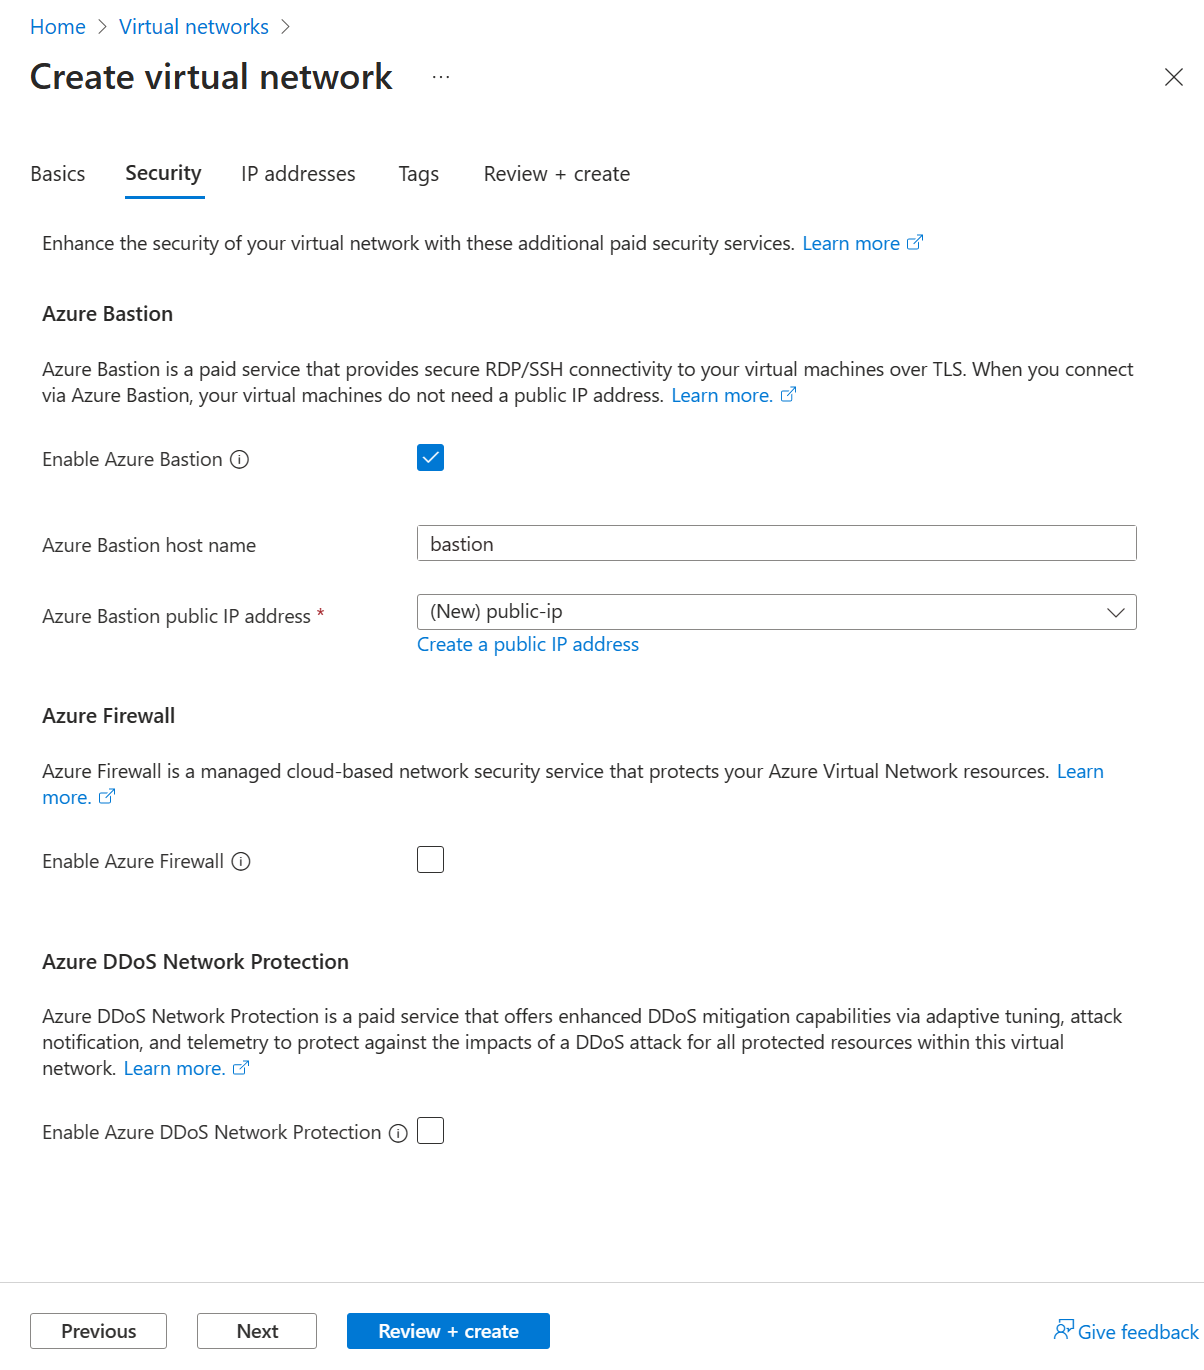 لقطة شاشة لخيارات تمكين مضيف Azure Bastion كجزء من إنشاء شبكة ظاهرية في مدخل Microsoft Azure.